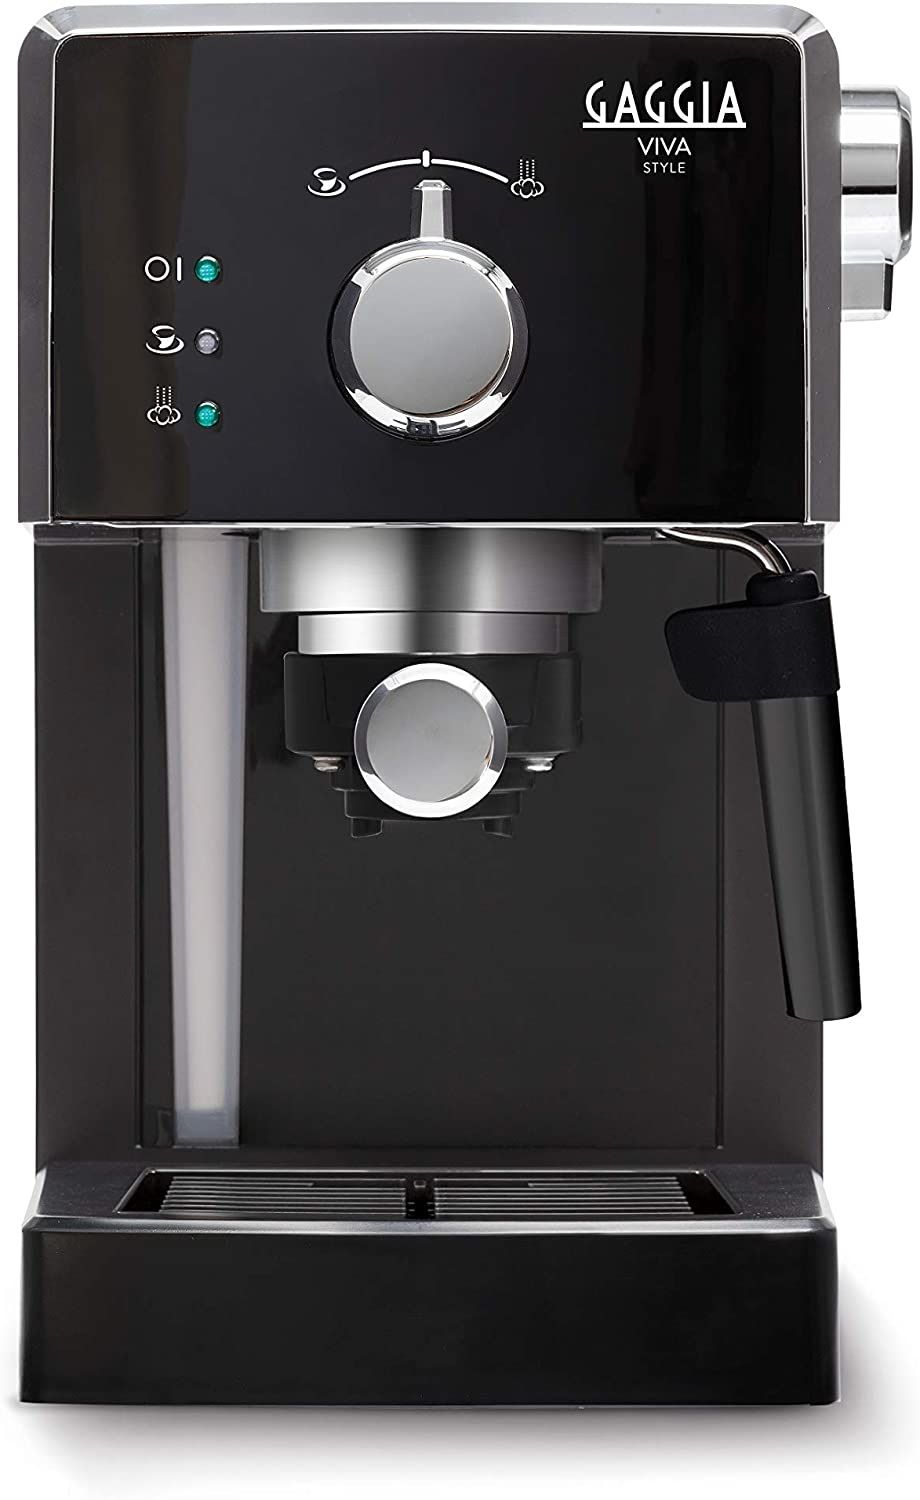 Macchine caffè espresso: Prezzi e Offerte online su Comet